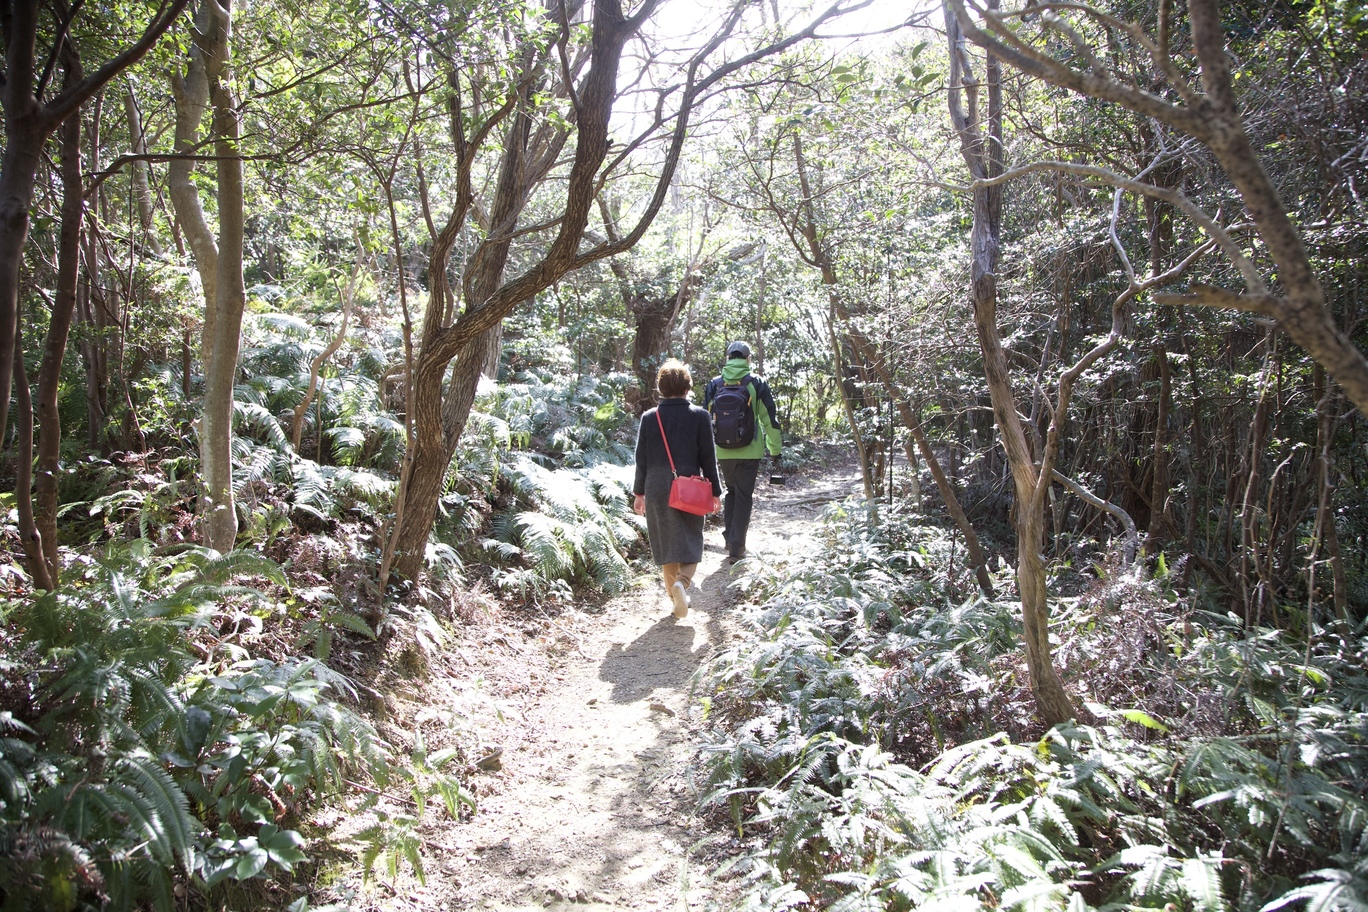 レンジャーの案内で、女性が横山山頂へ続く道を歩いている写真です。細い道で、木々やシダの仲間が道まで張り出しています。